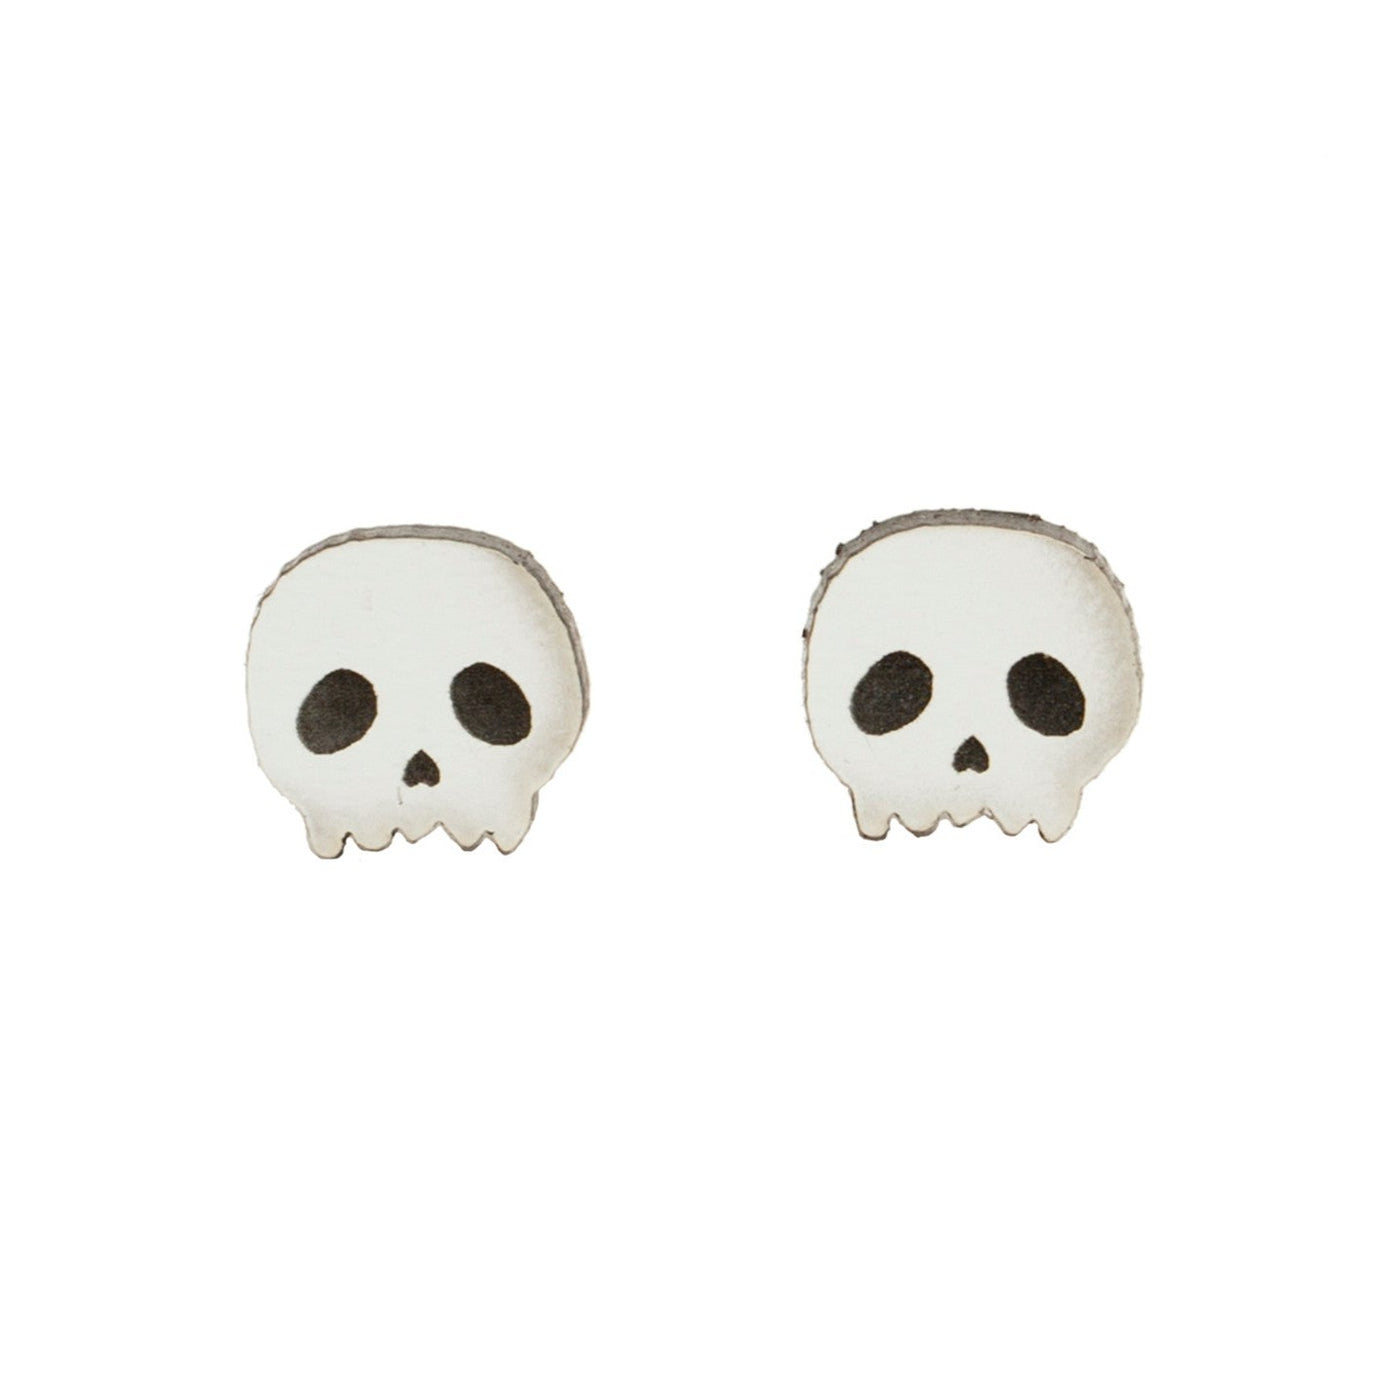 Skull Earrings in White